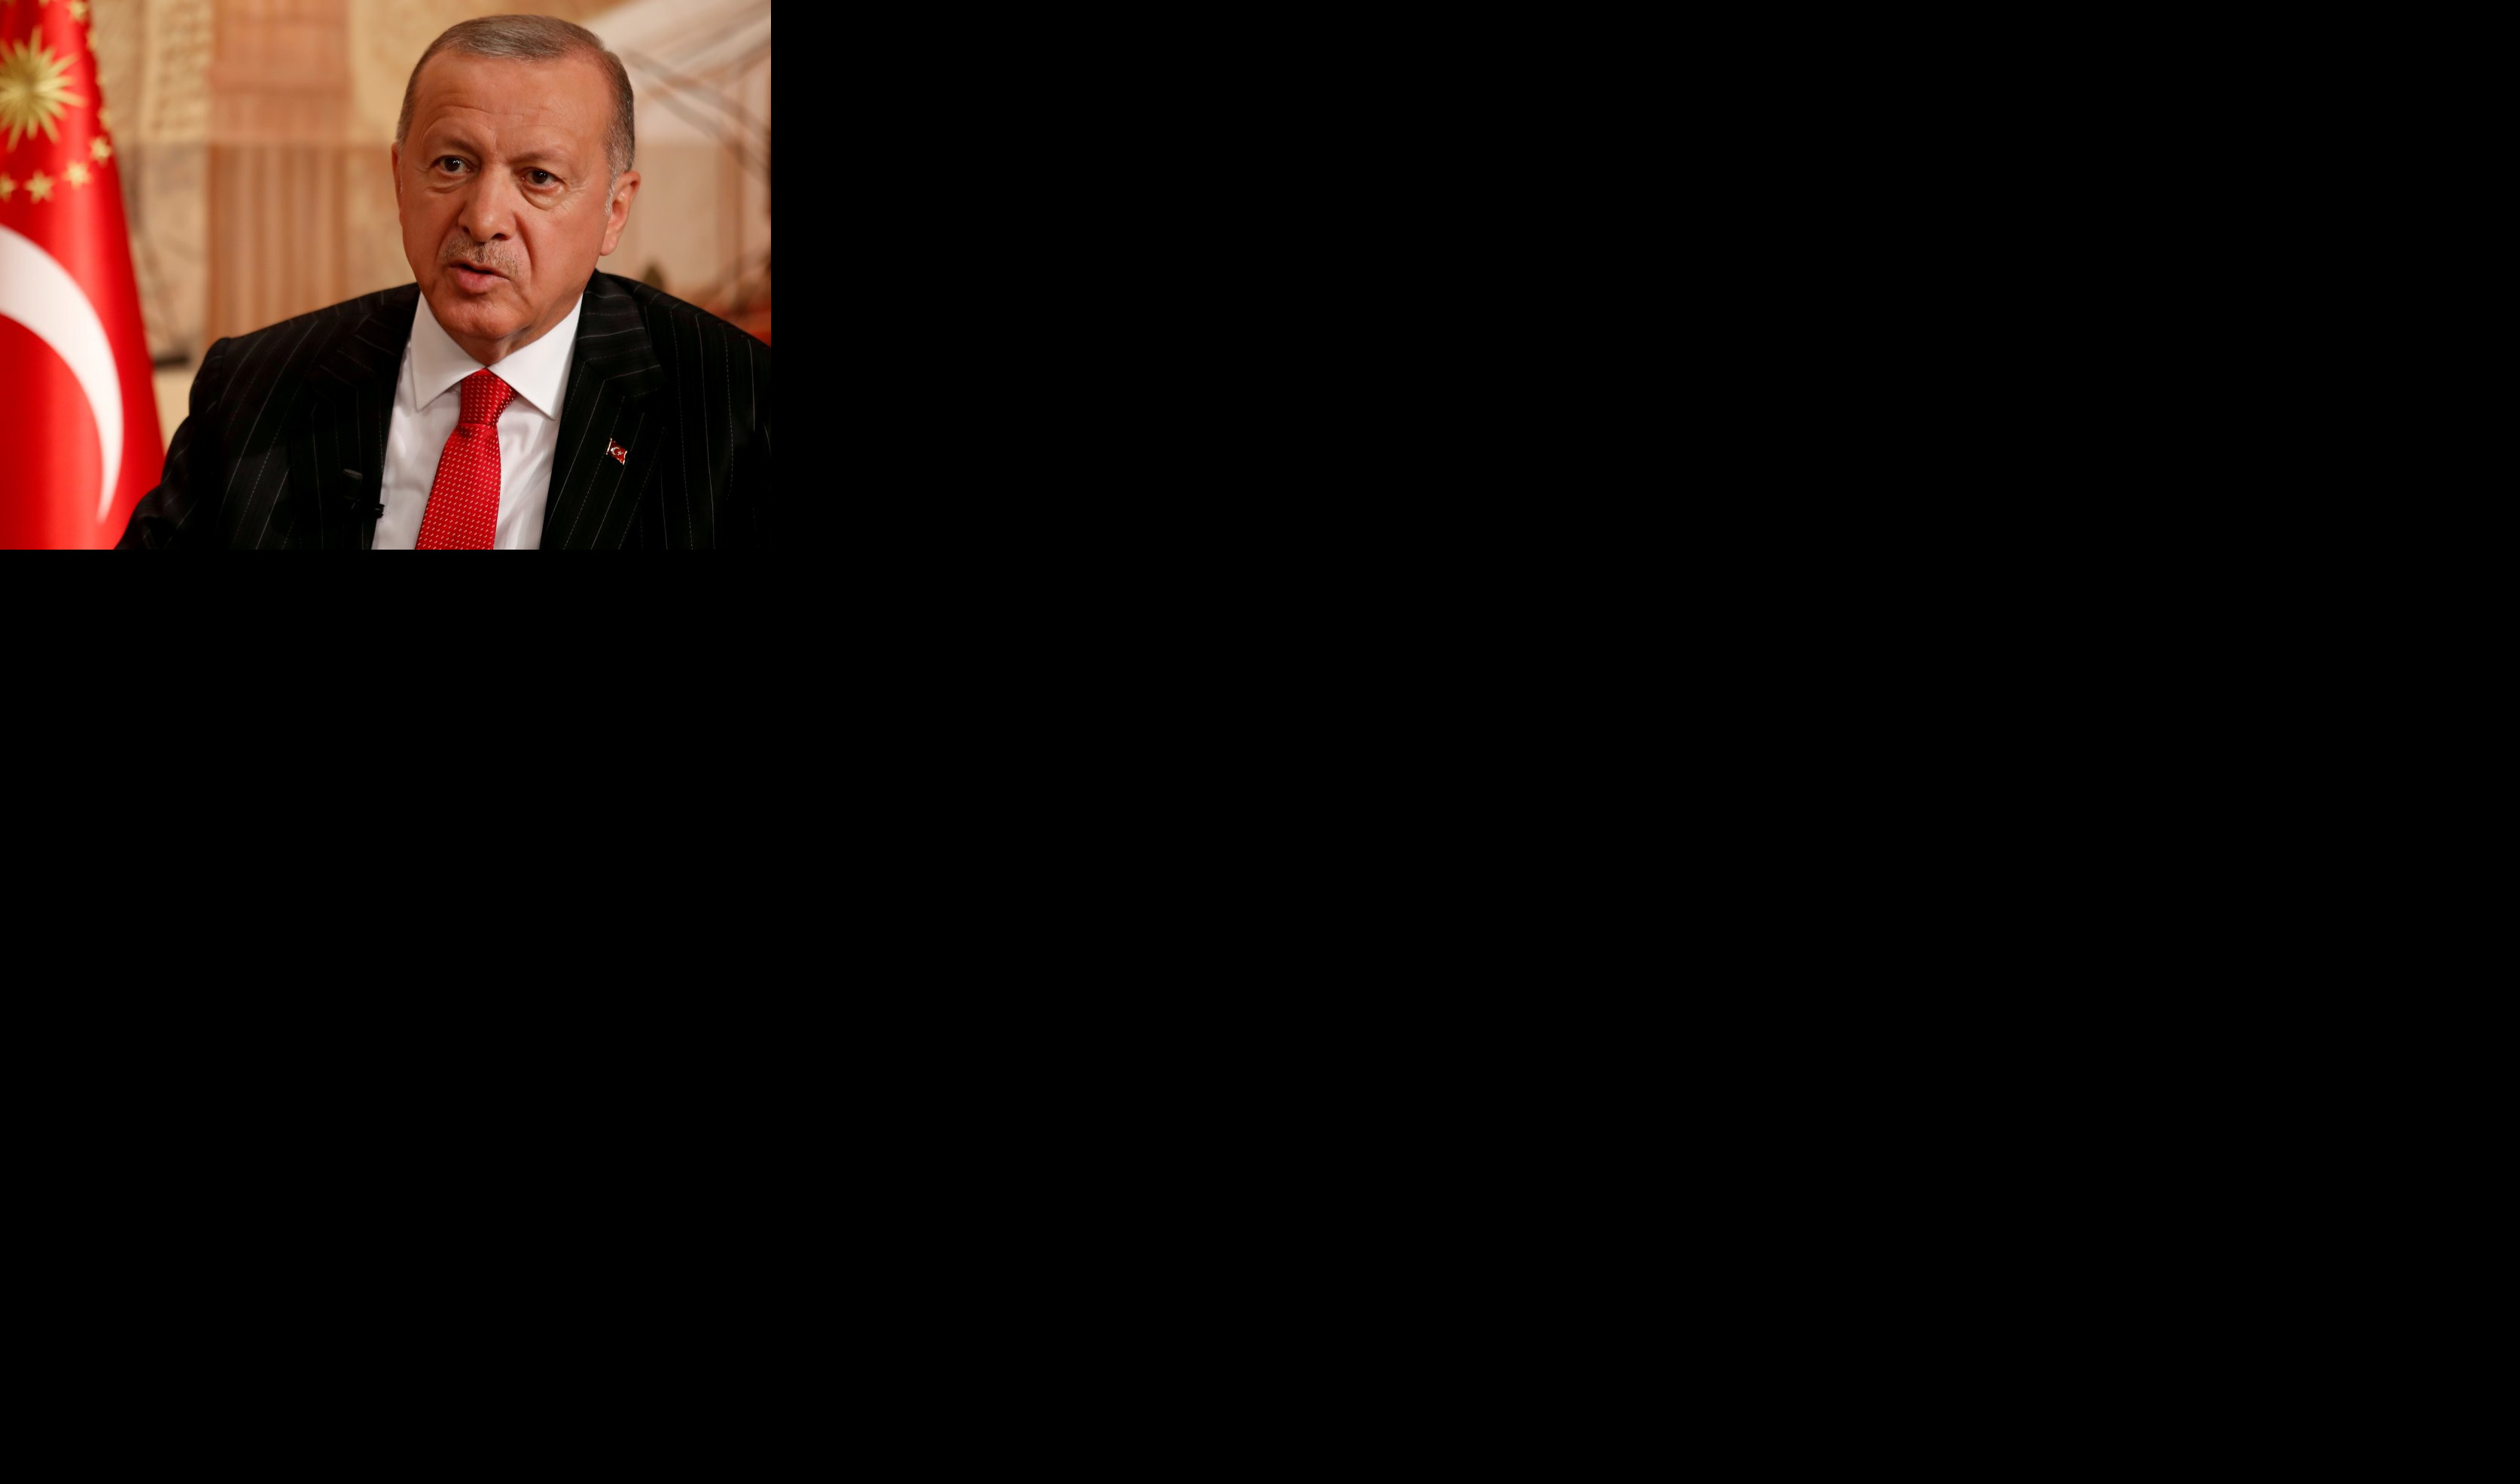 "NIŠTA IM NIJE SVETO, NEMAJU NIKAKVE VREDNOSTI!" Turska oštro osudila karikaturu Erdogana u Šarli Ebdou, ovo Francuzima neće oprostiti! (FOTO)